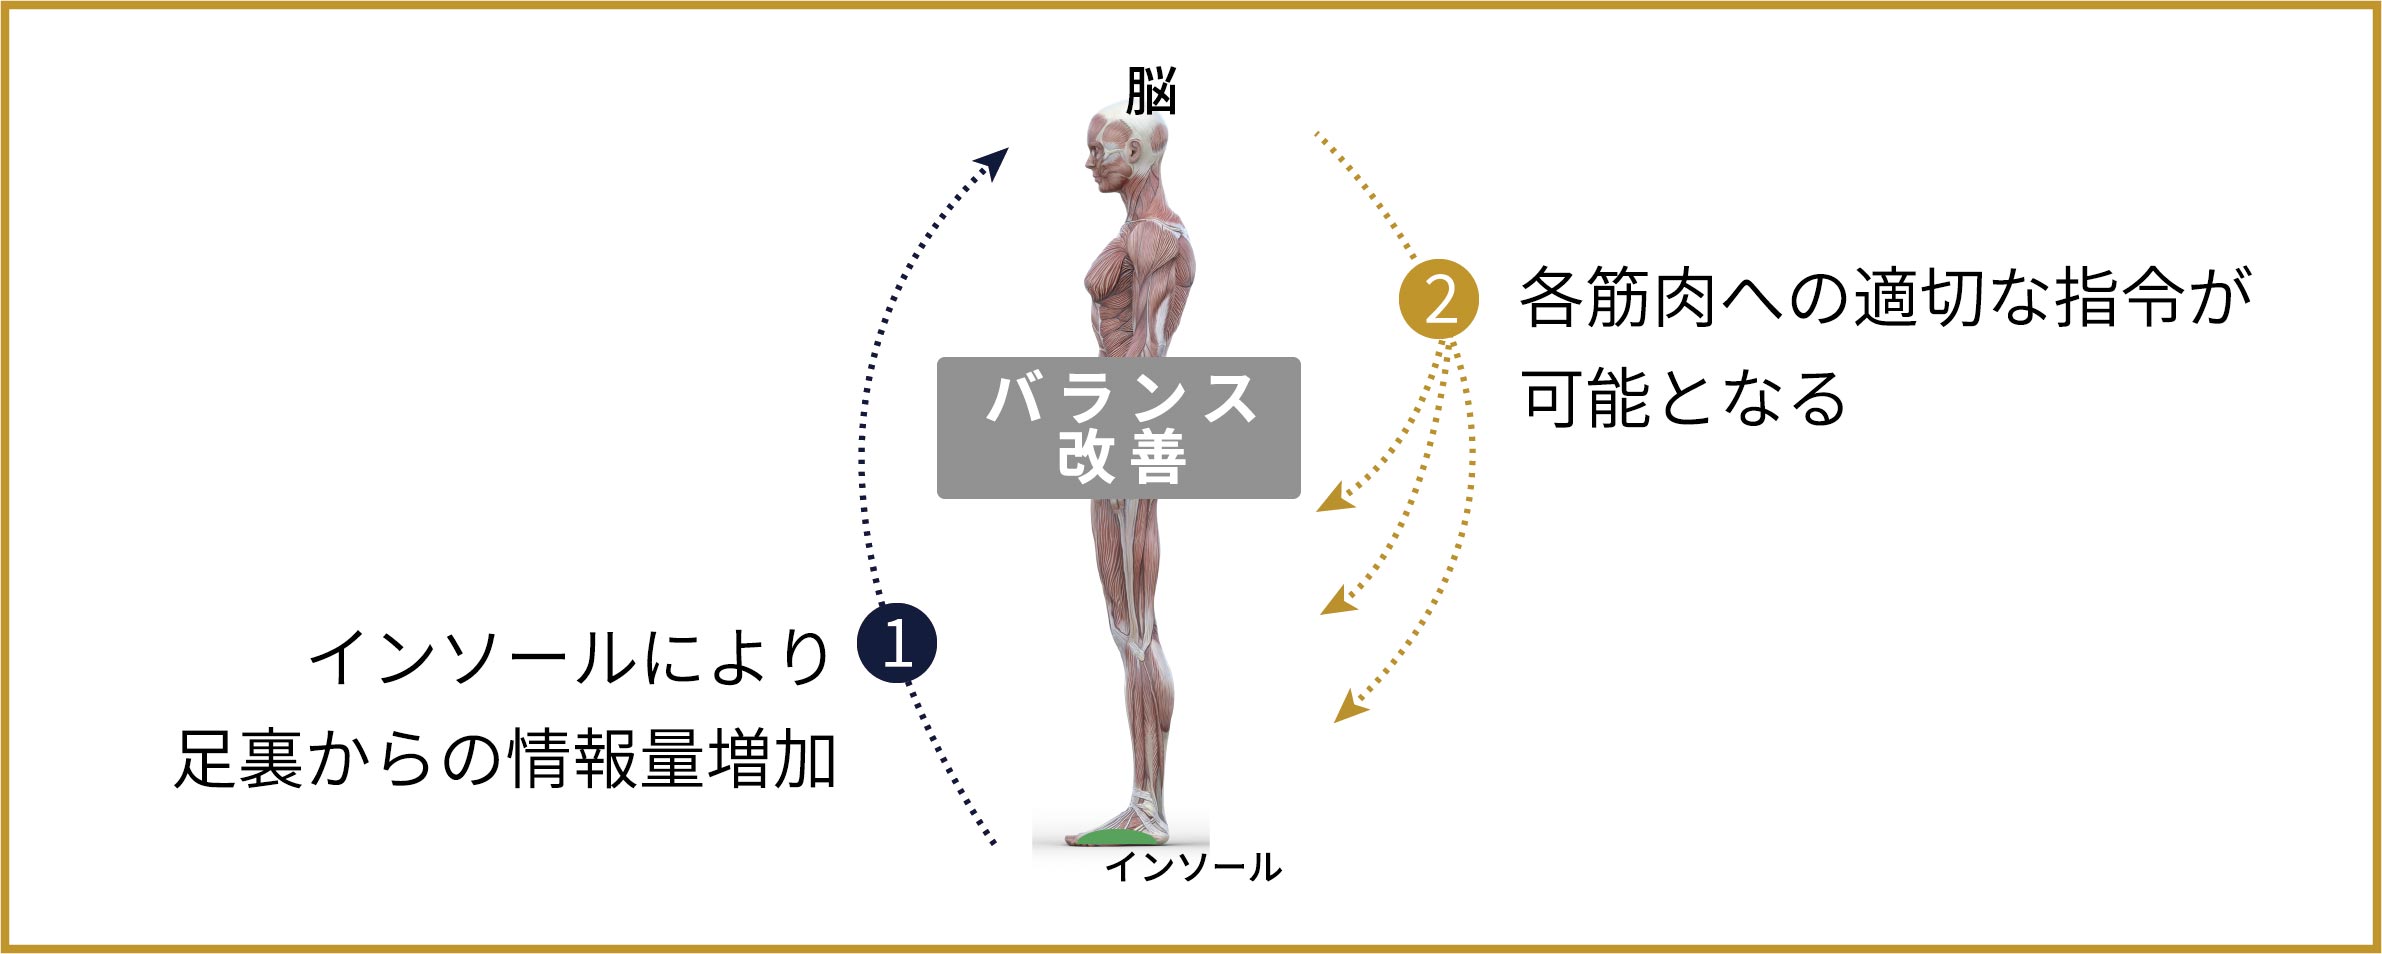 1.インソールにより足裏からの情報量増加 2.各筋肉への適切な指令が可能となる バランス改善